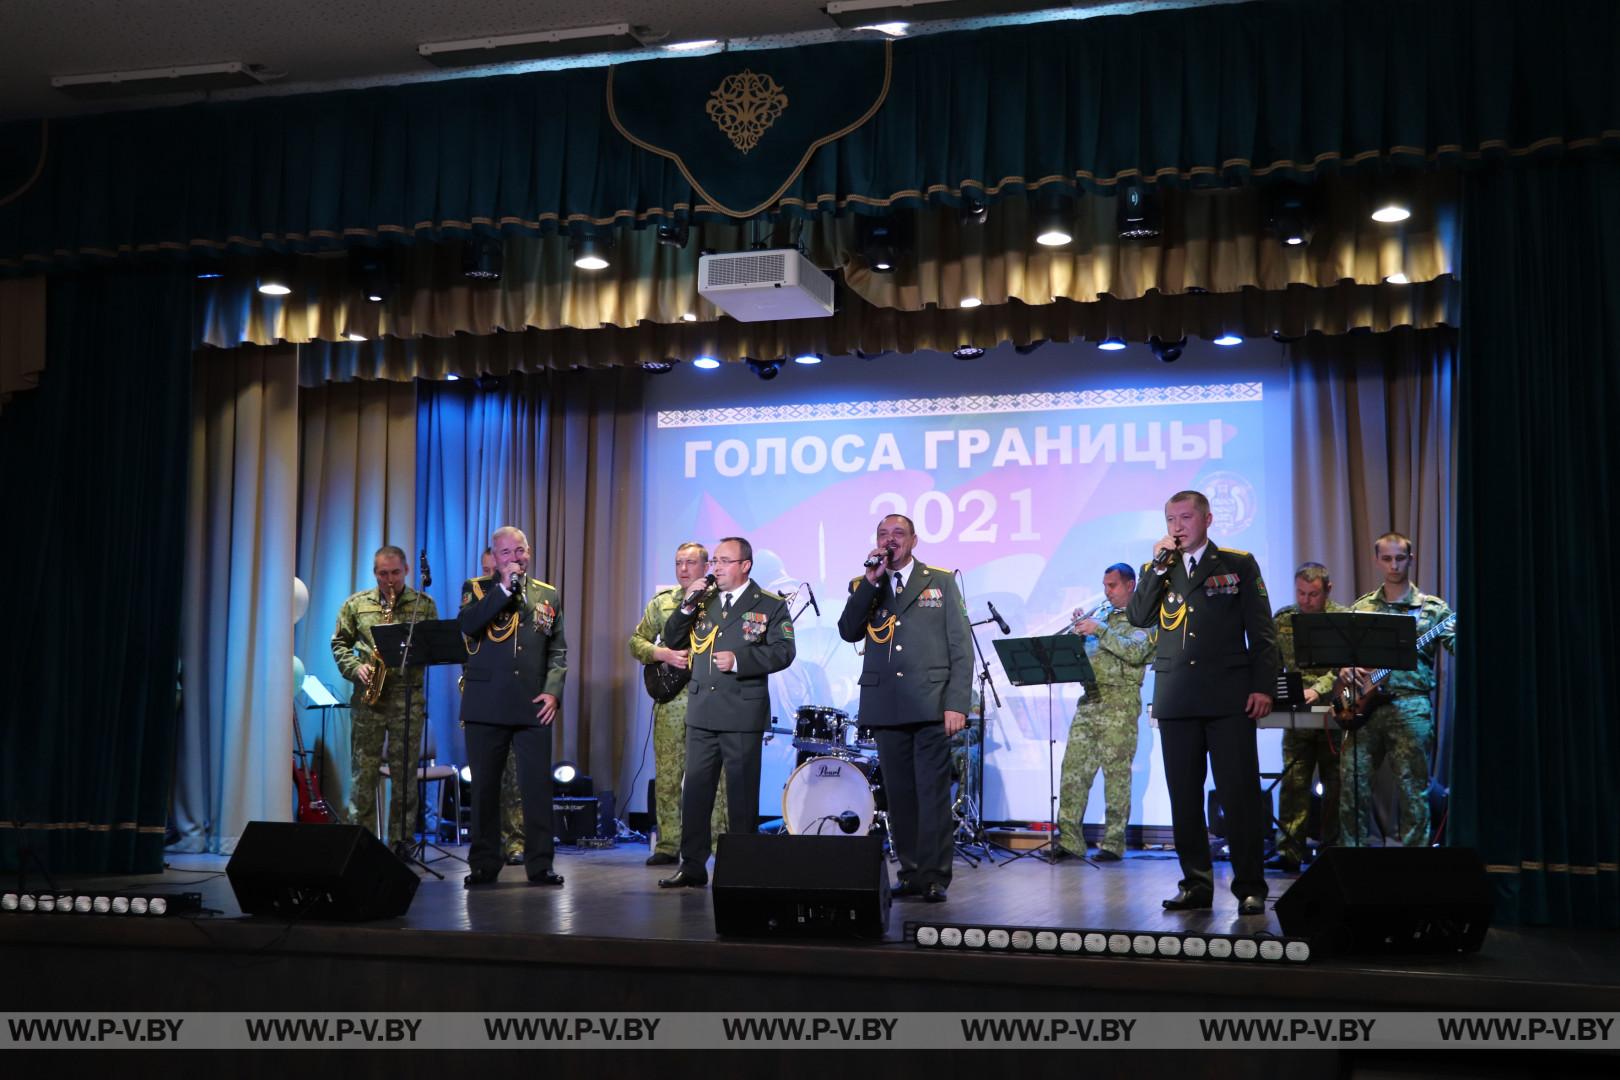 Пинские пограничники приняли участие в фестивале "Голоса границы"